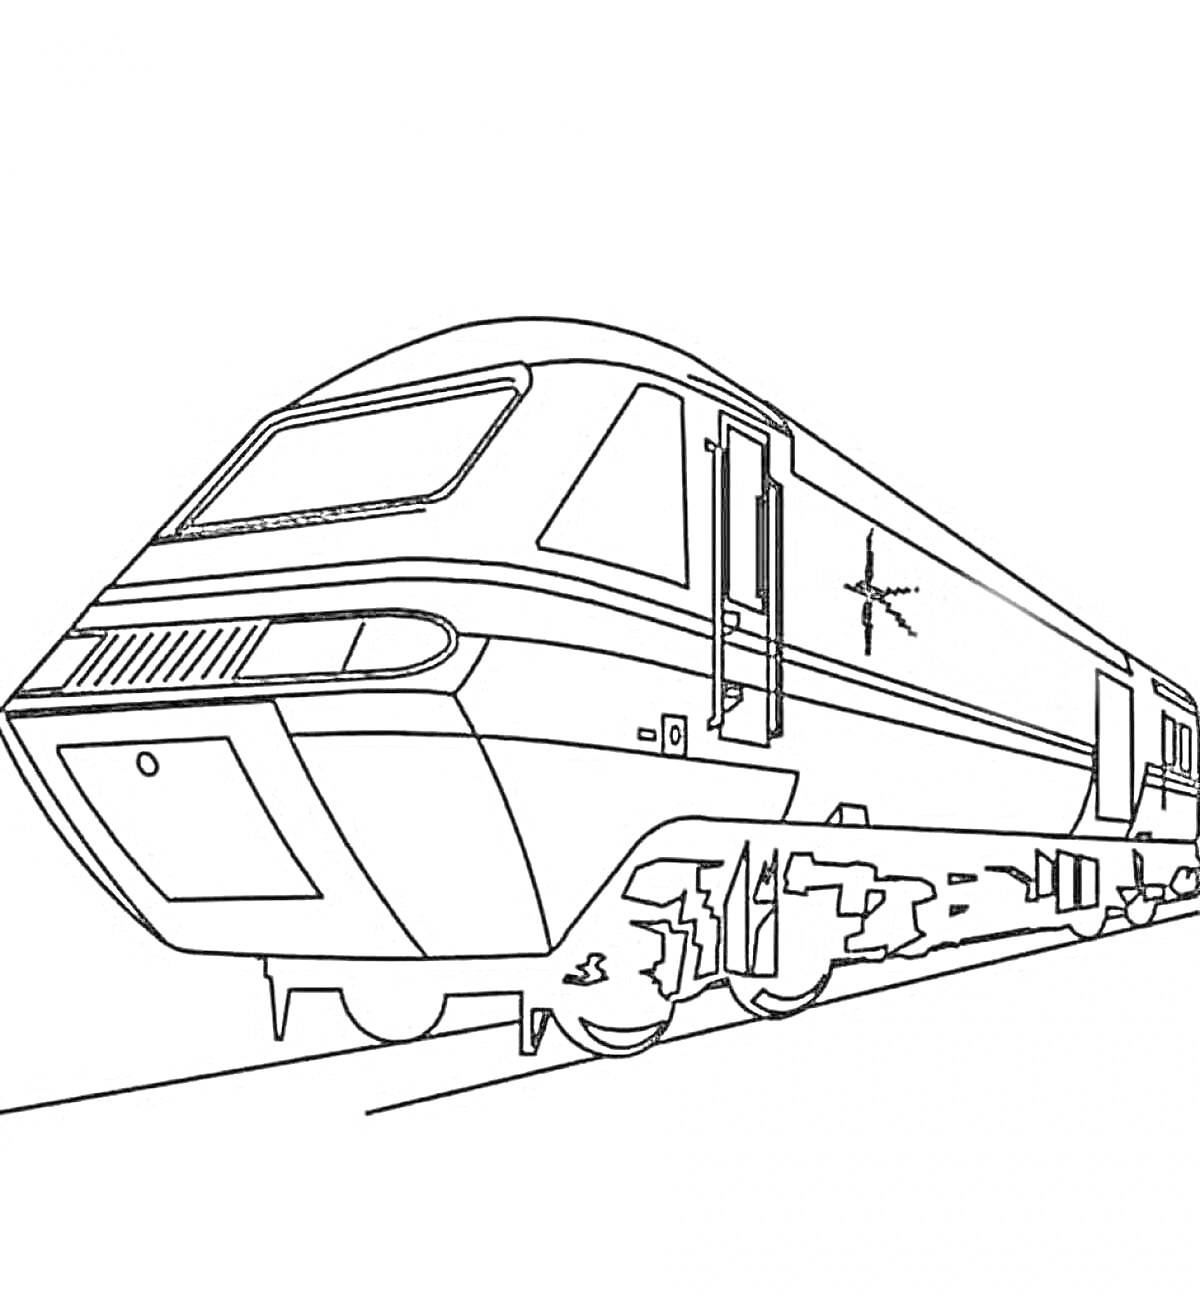 Раскраска поезд на железнодорожных путях с ветровым стеклом, полосами и звездой на боку вагона